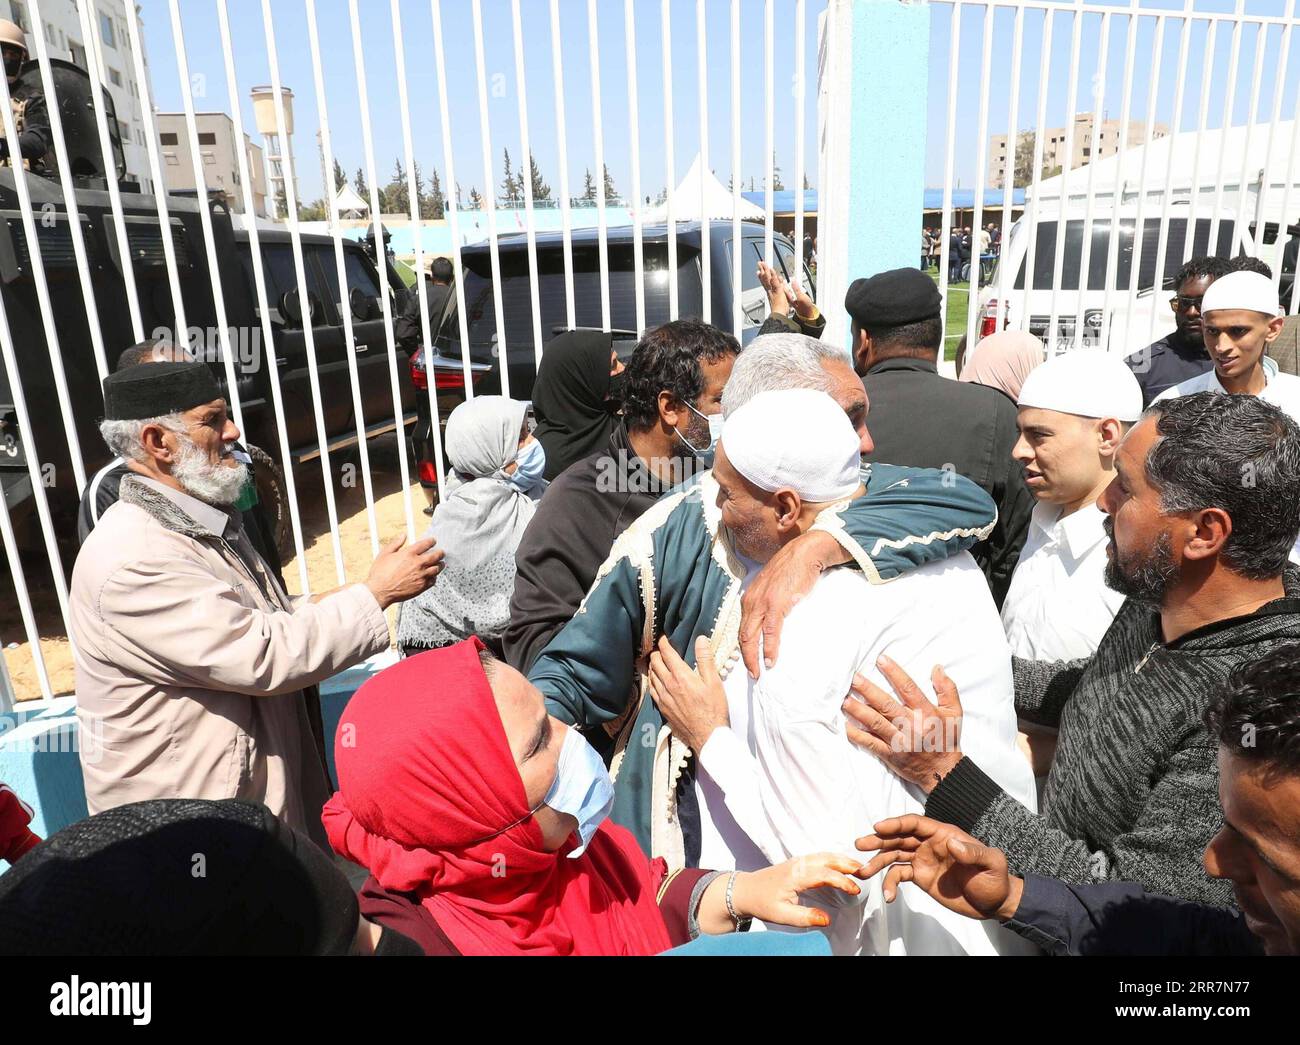 210401 -- TRIPOLI, le 1 avril 2021 -- les prisonniers libérés sont vus avec leurs familles dans la ville de Zawiya, à environ 45 kilomètres à l'ouest de Tripoli, en Libye, le 31 mars 2021. Le président du Conseil de la présidence libyenne, Mohammad Menfi, s’est félicité mercredi de la libération de plus de 100 prisonniers qui combattaient avec l’armée basée à l’est pendant la guerre dans et autour de la capitale Tripoli. Photo de /Xinhua LIBYA-ZAWIYA-PRISONERS-RELEASE HamzaxTurkia PUBLICATIONxNOTxINxCHN Banque D'Images